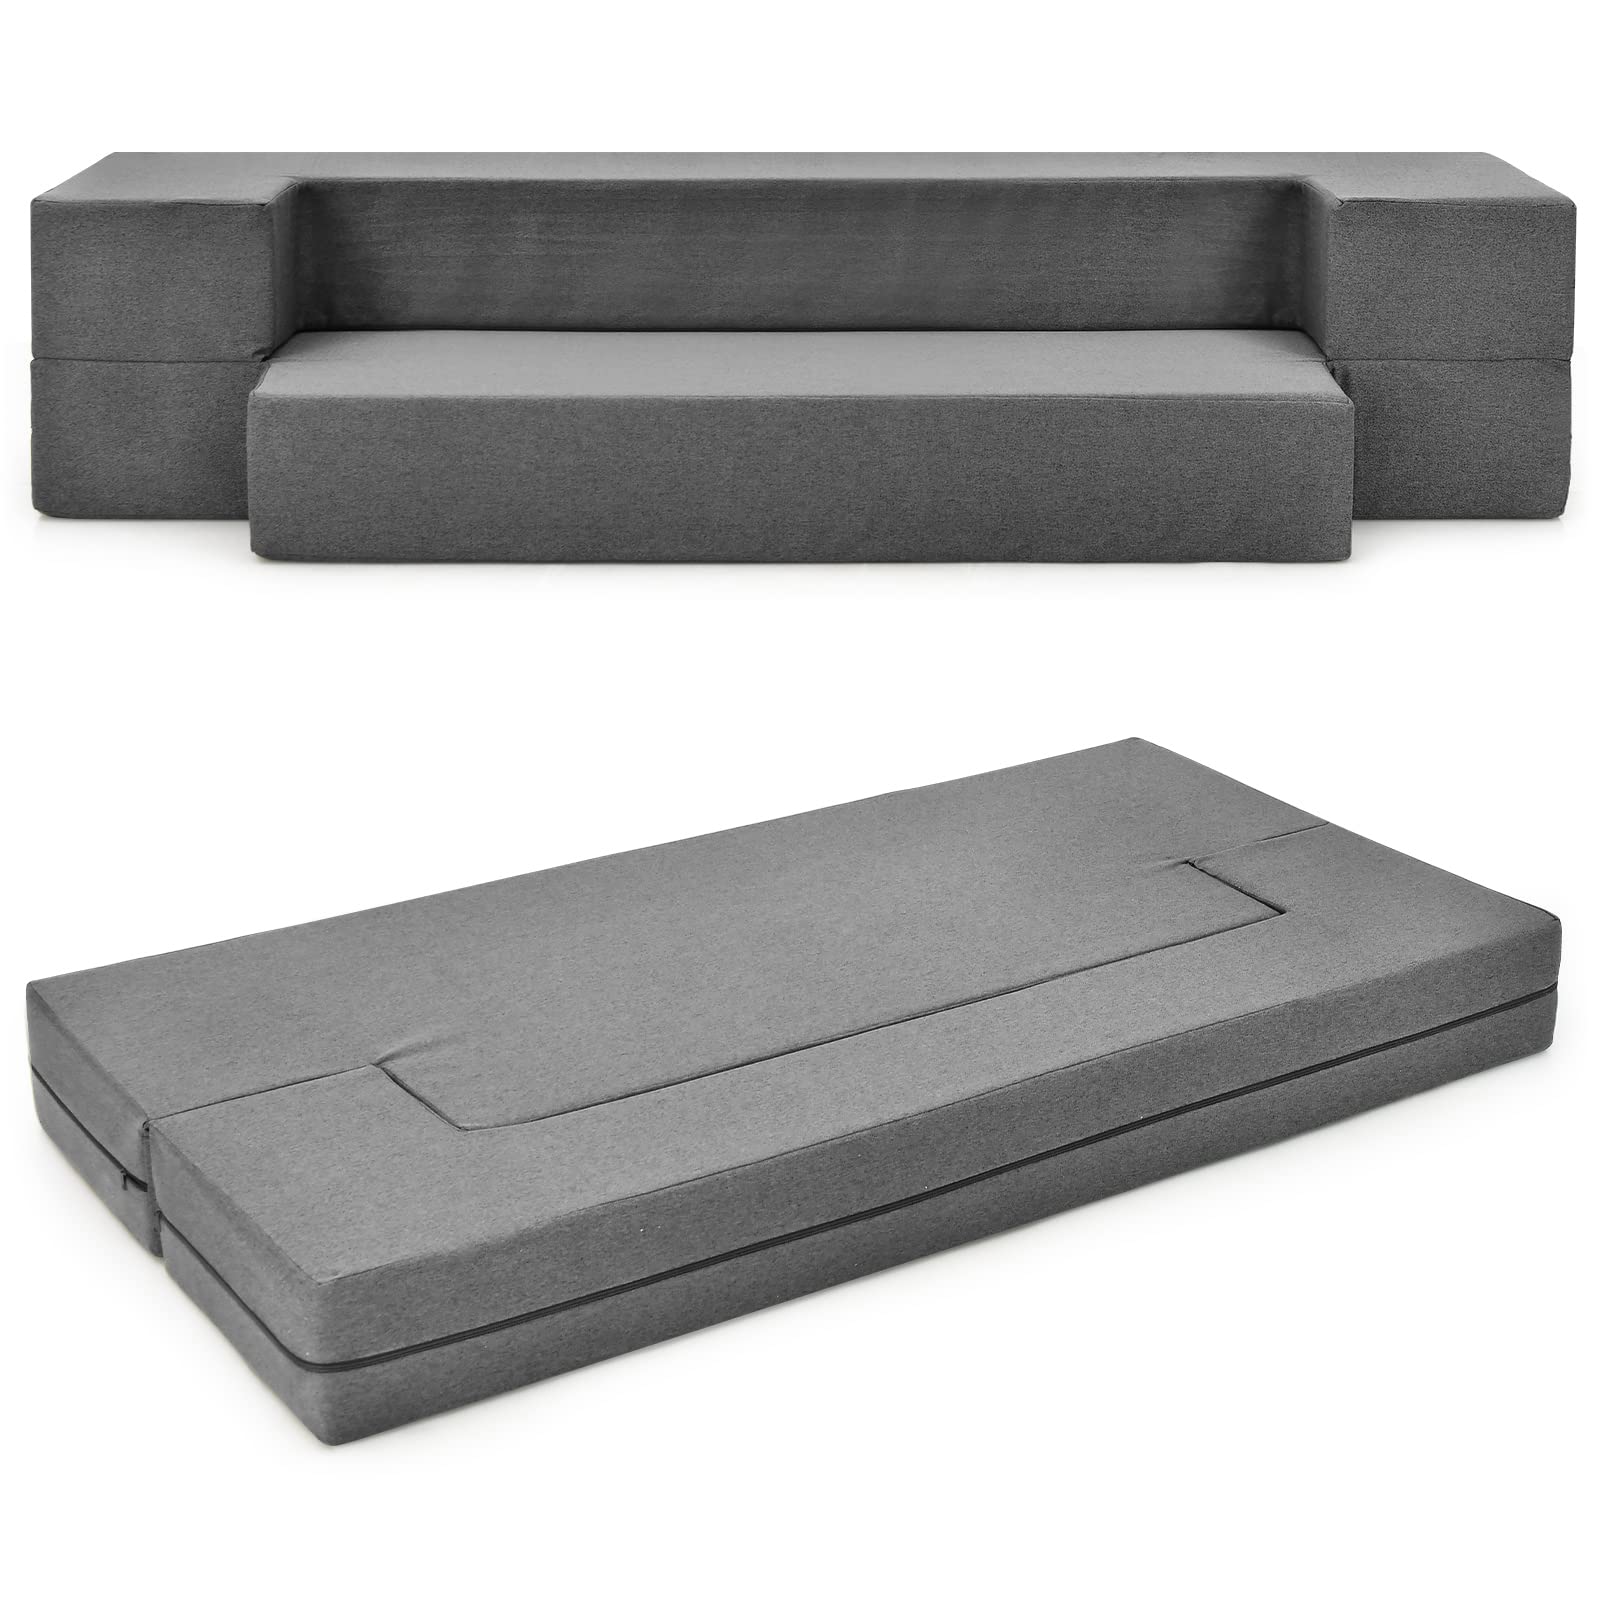 Giantex 8 inch Folding Sofa Bed Couch, Memory Foam Futon Mattress Linen Fabric Sofa, Queen